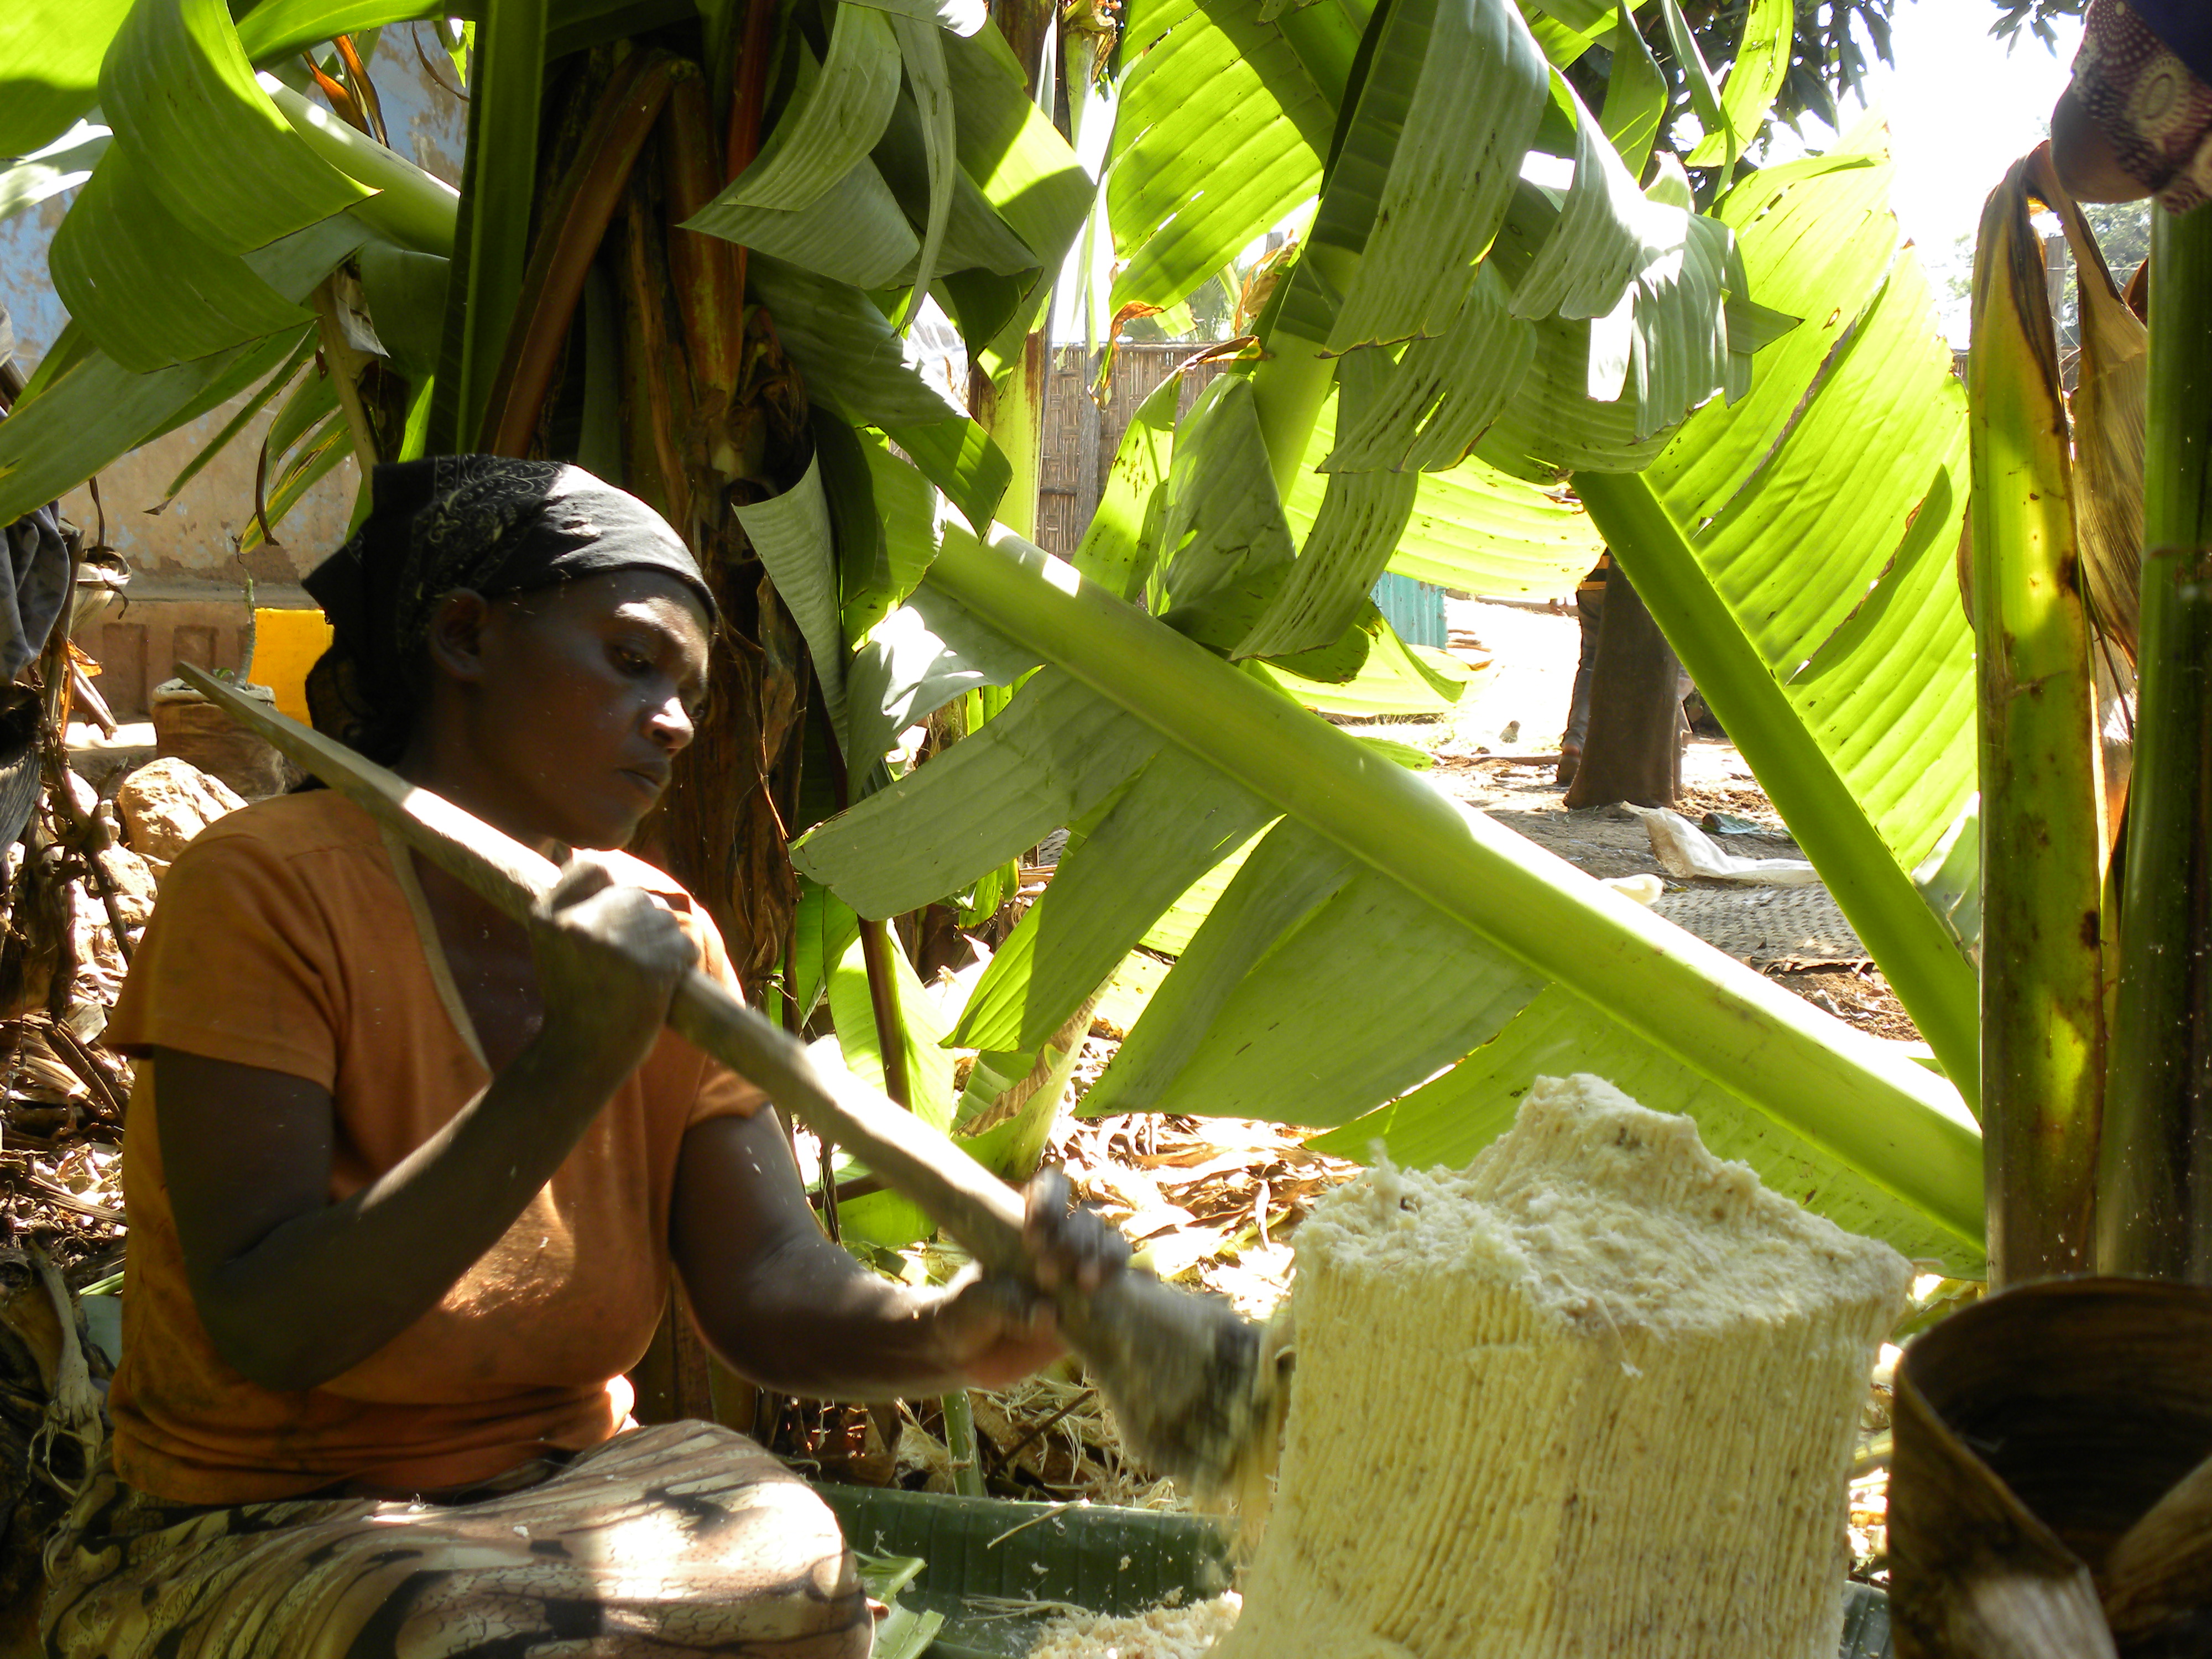 A hamis banán gyökerének hagyományos feldolgozása Etiópiában